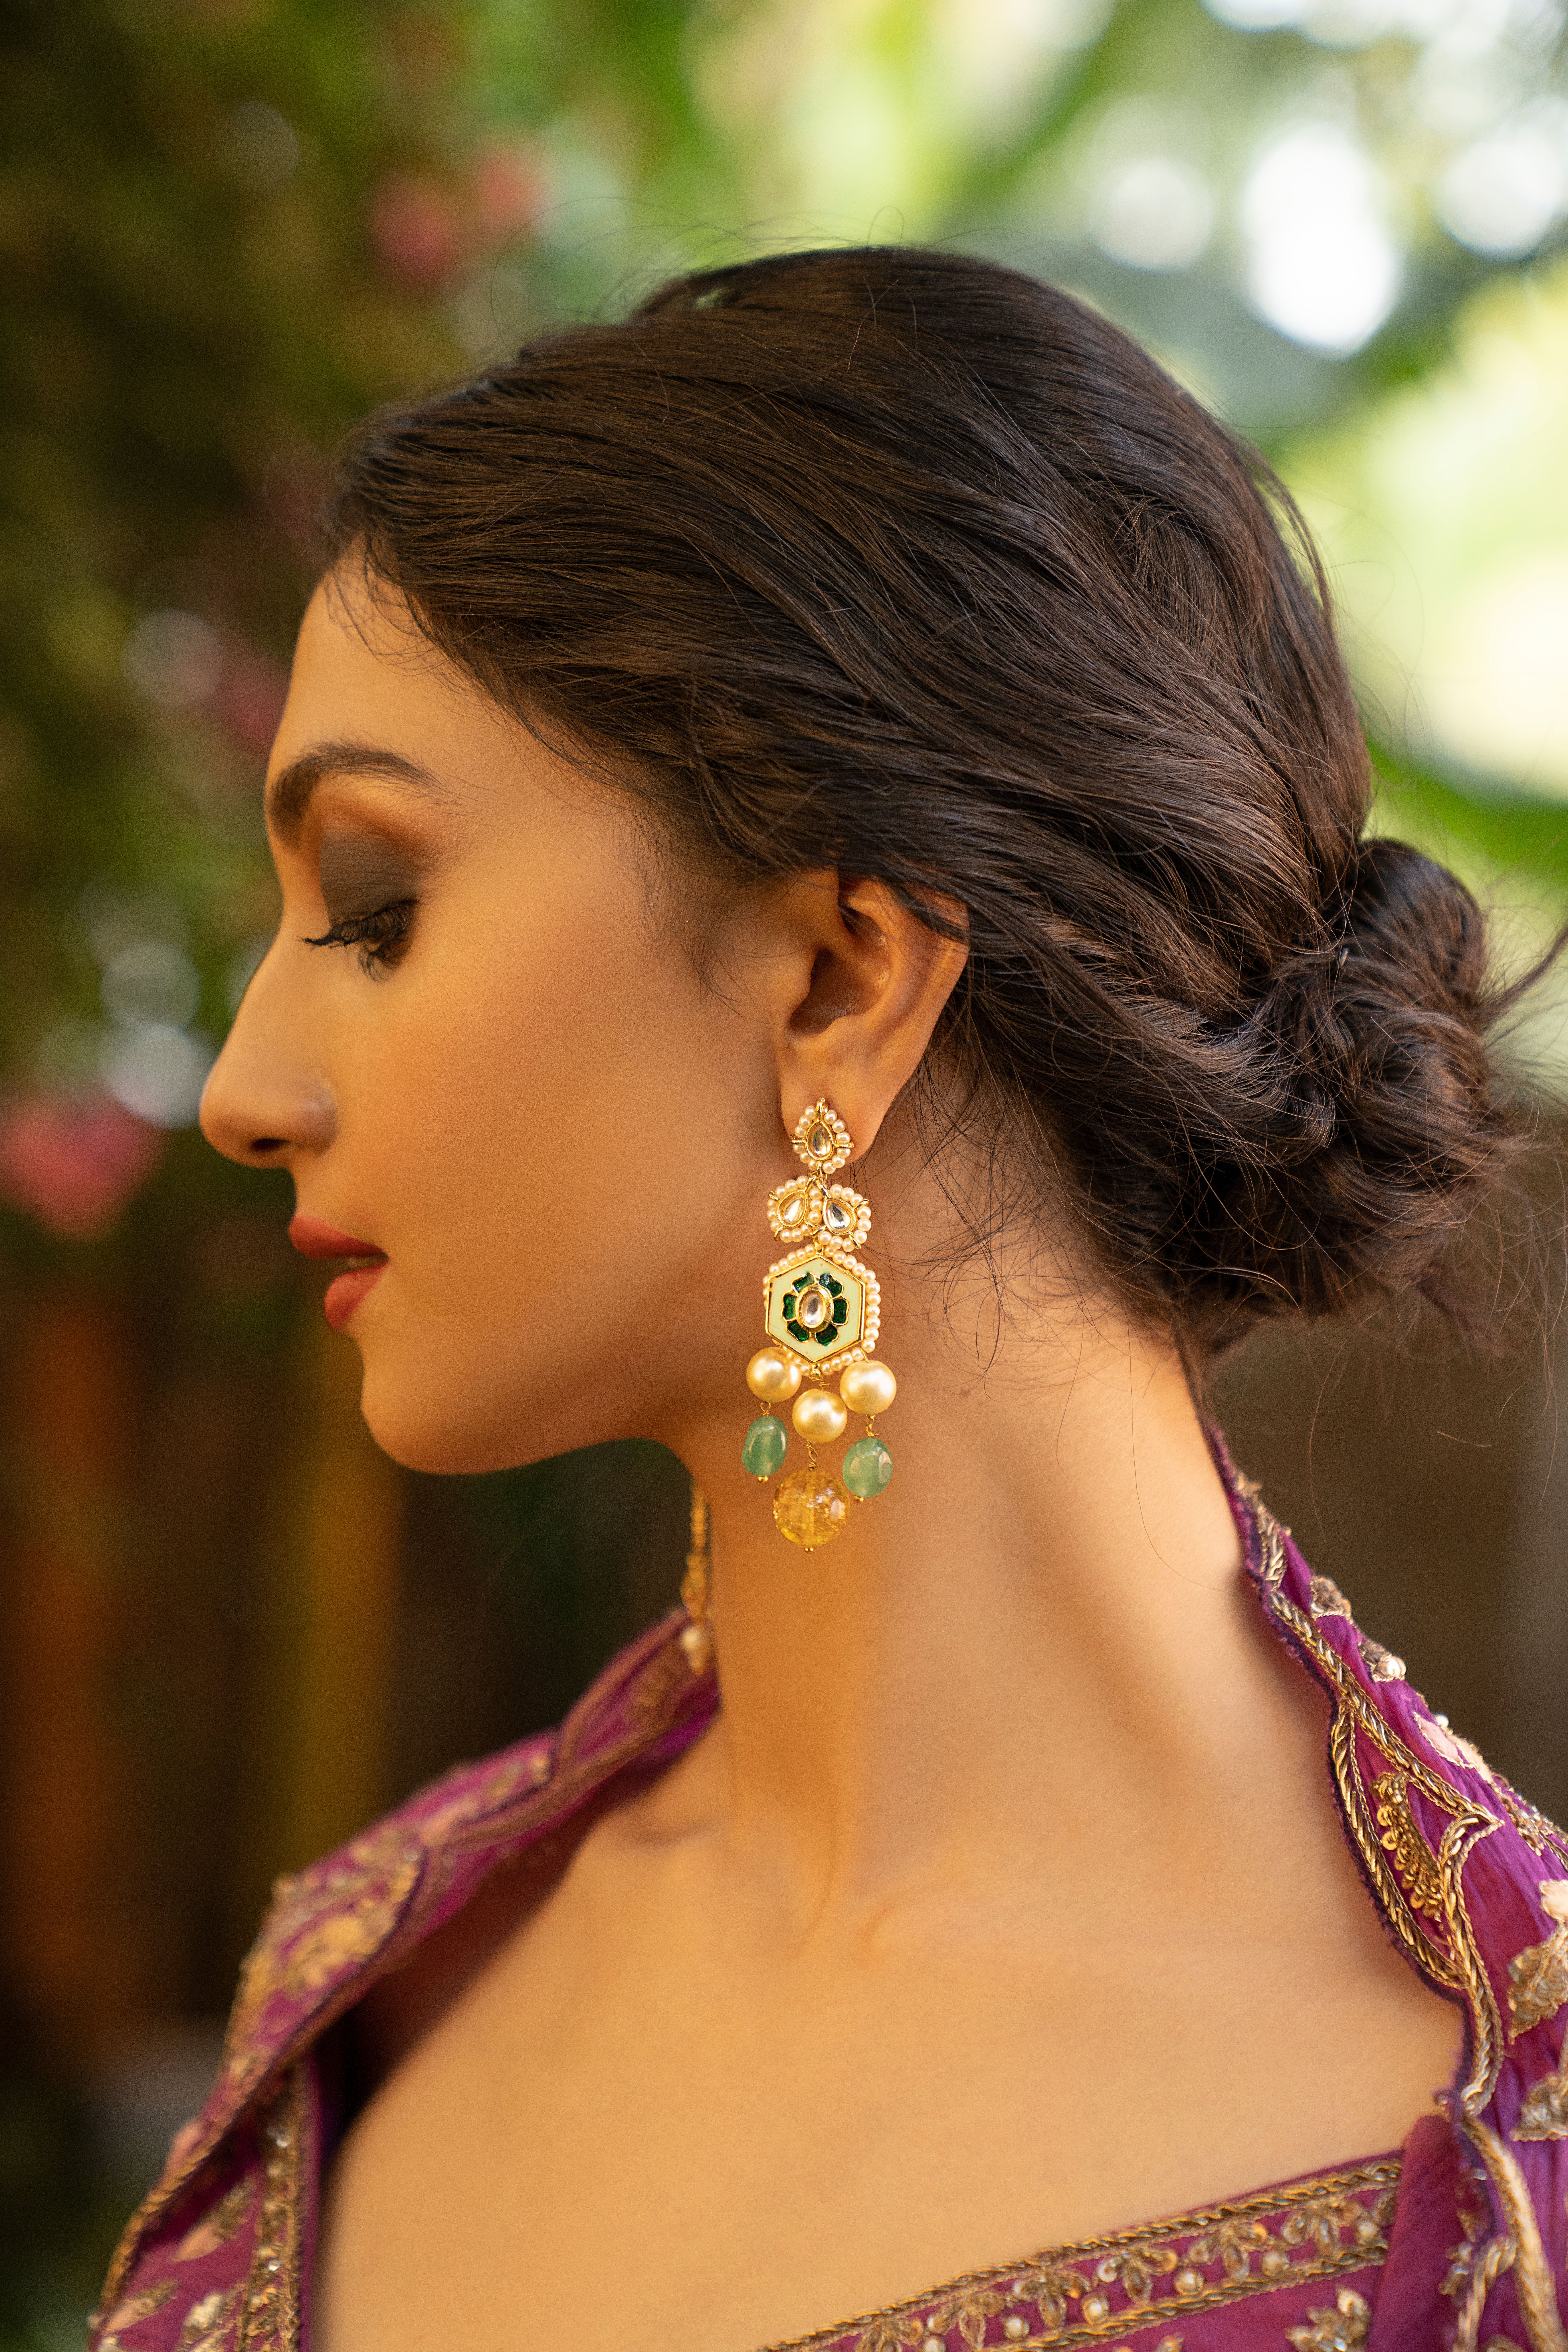 SVI's Kanjeevaram Banarasi Silk Saree With 1 Pair of Free Earrings.